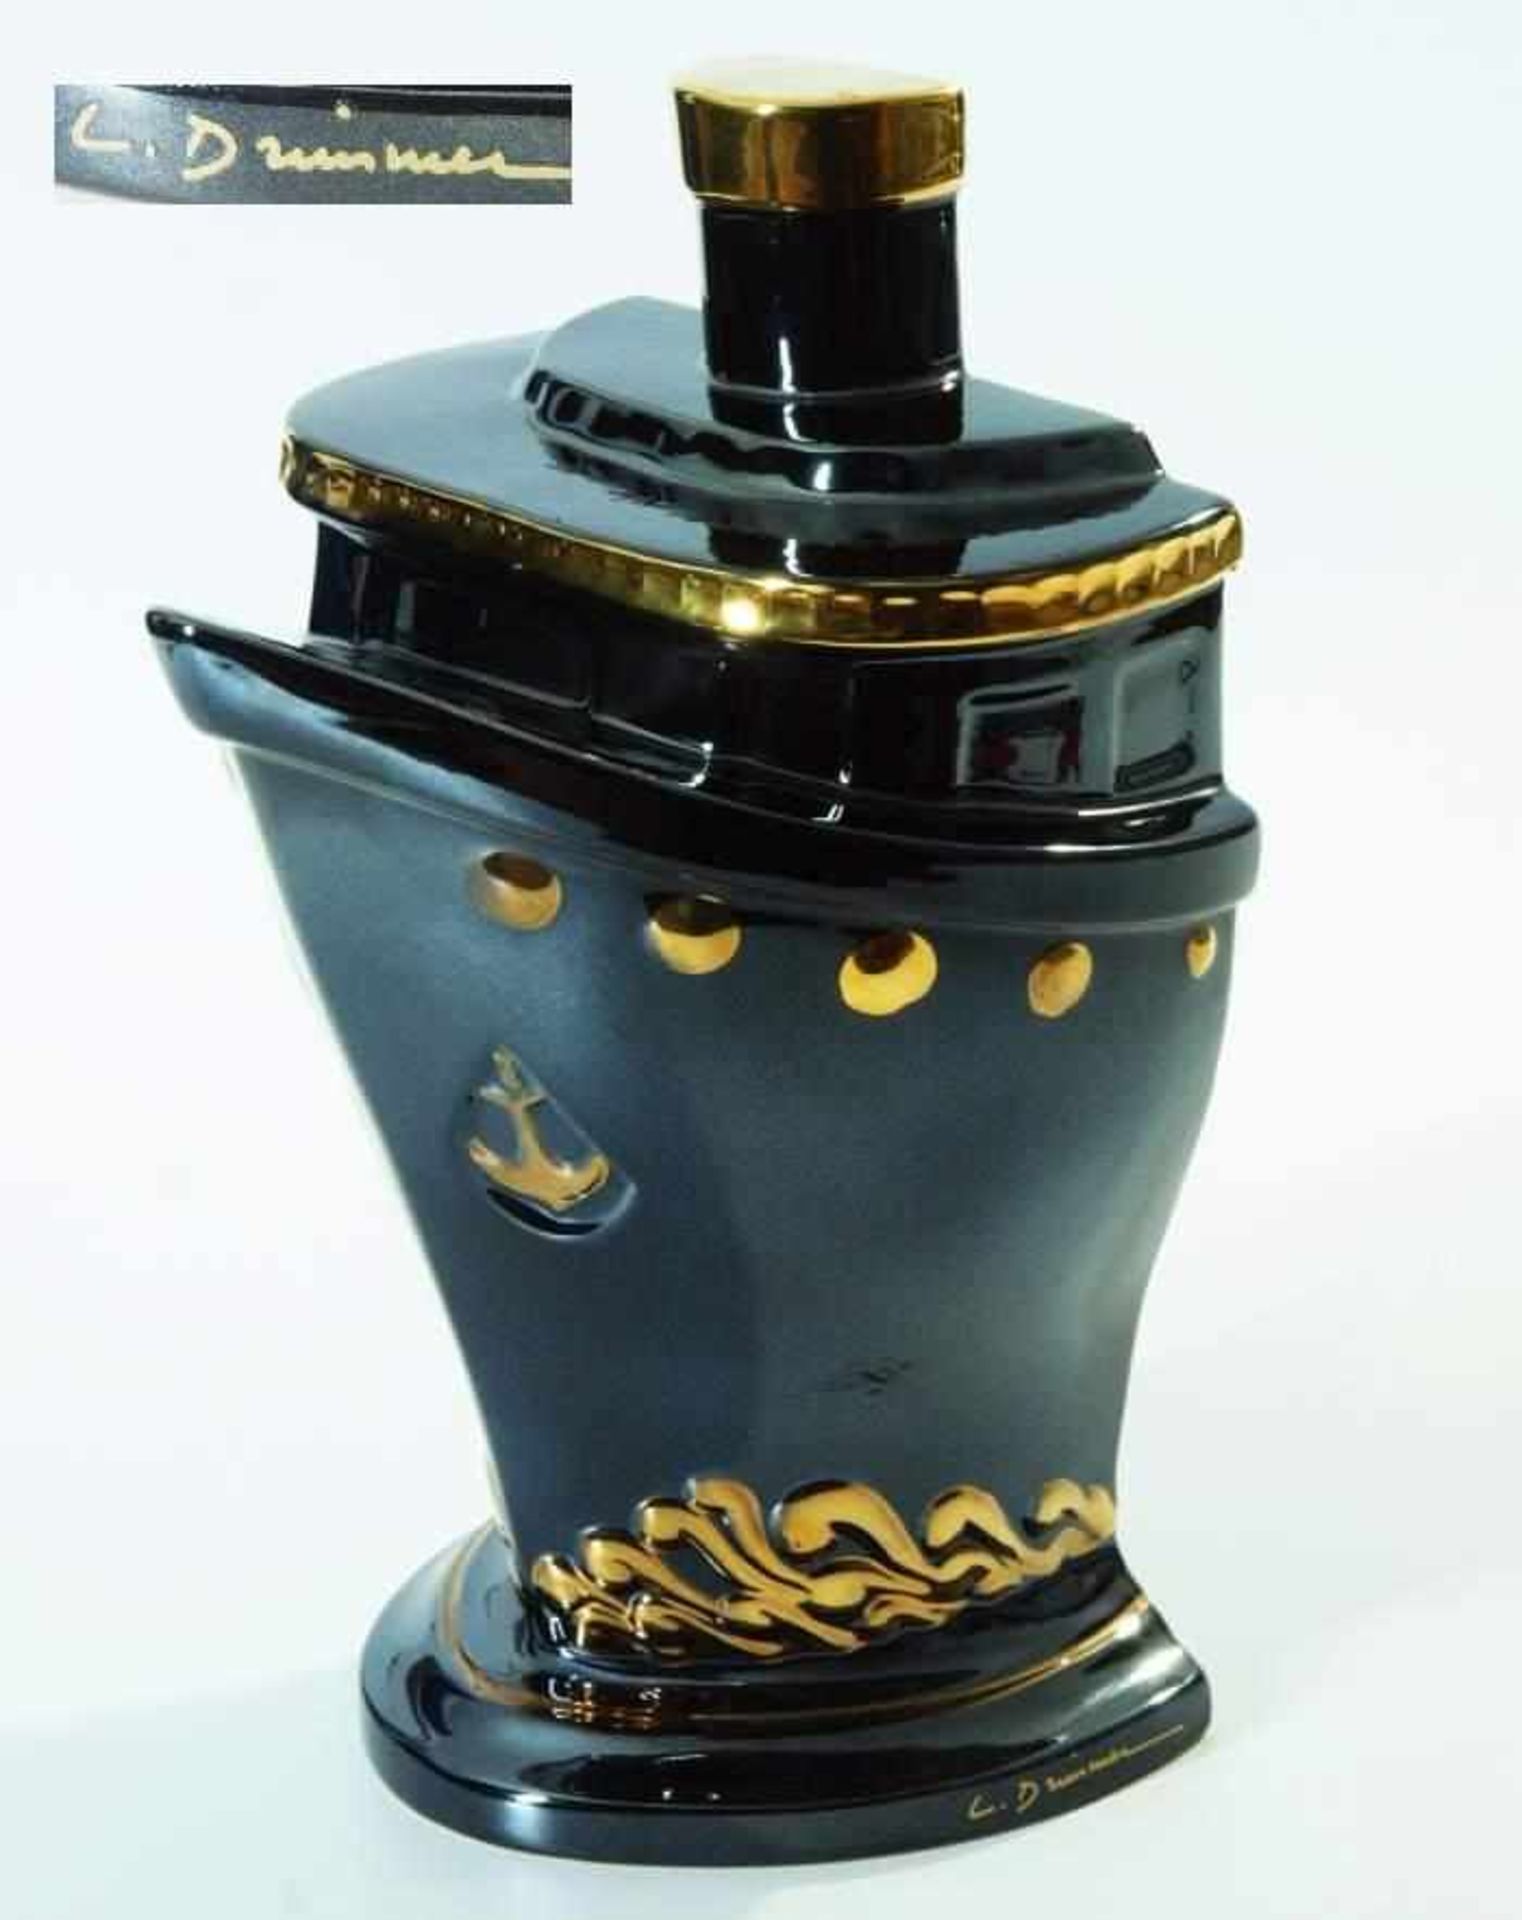 Bug der Titanic. Bug der Titanic. Keramik schwarz glasiert, partiell in Goldoptik staffiert.